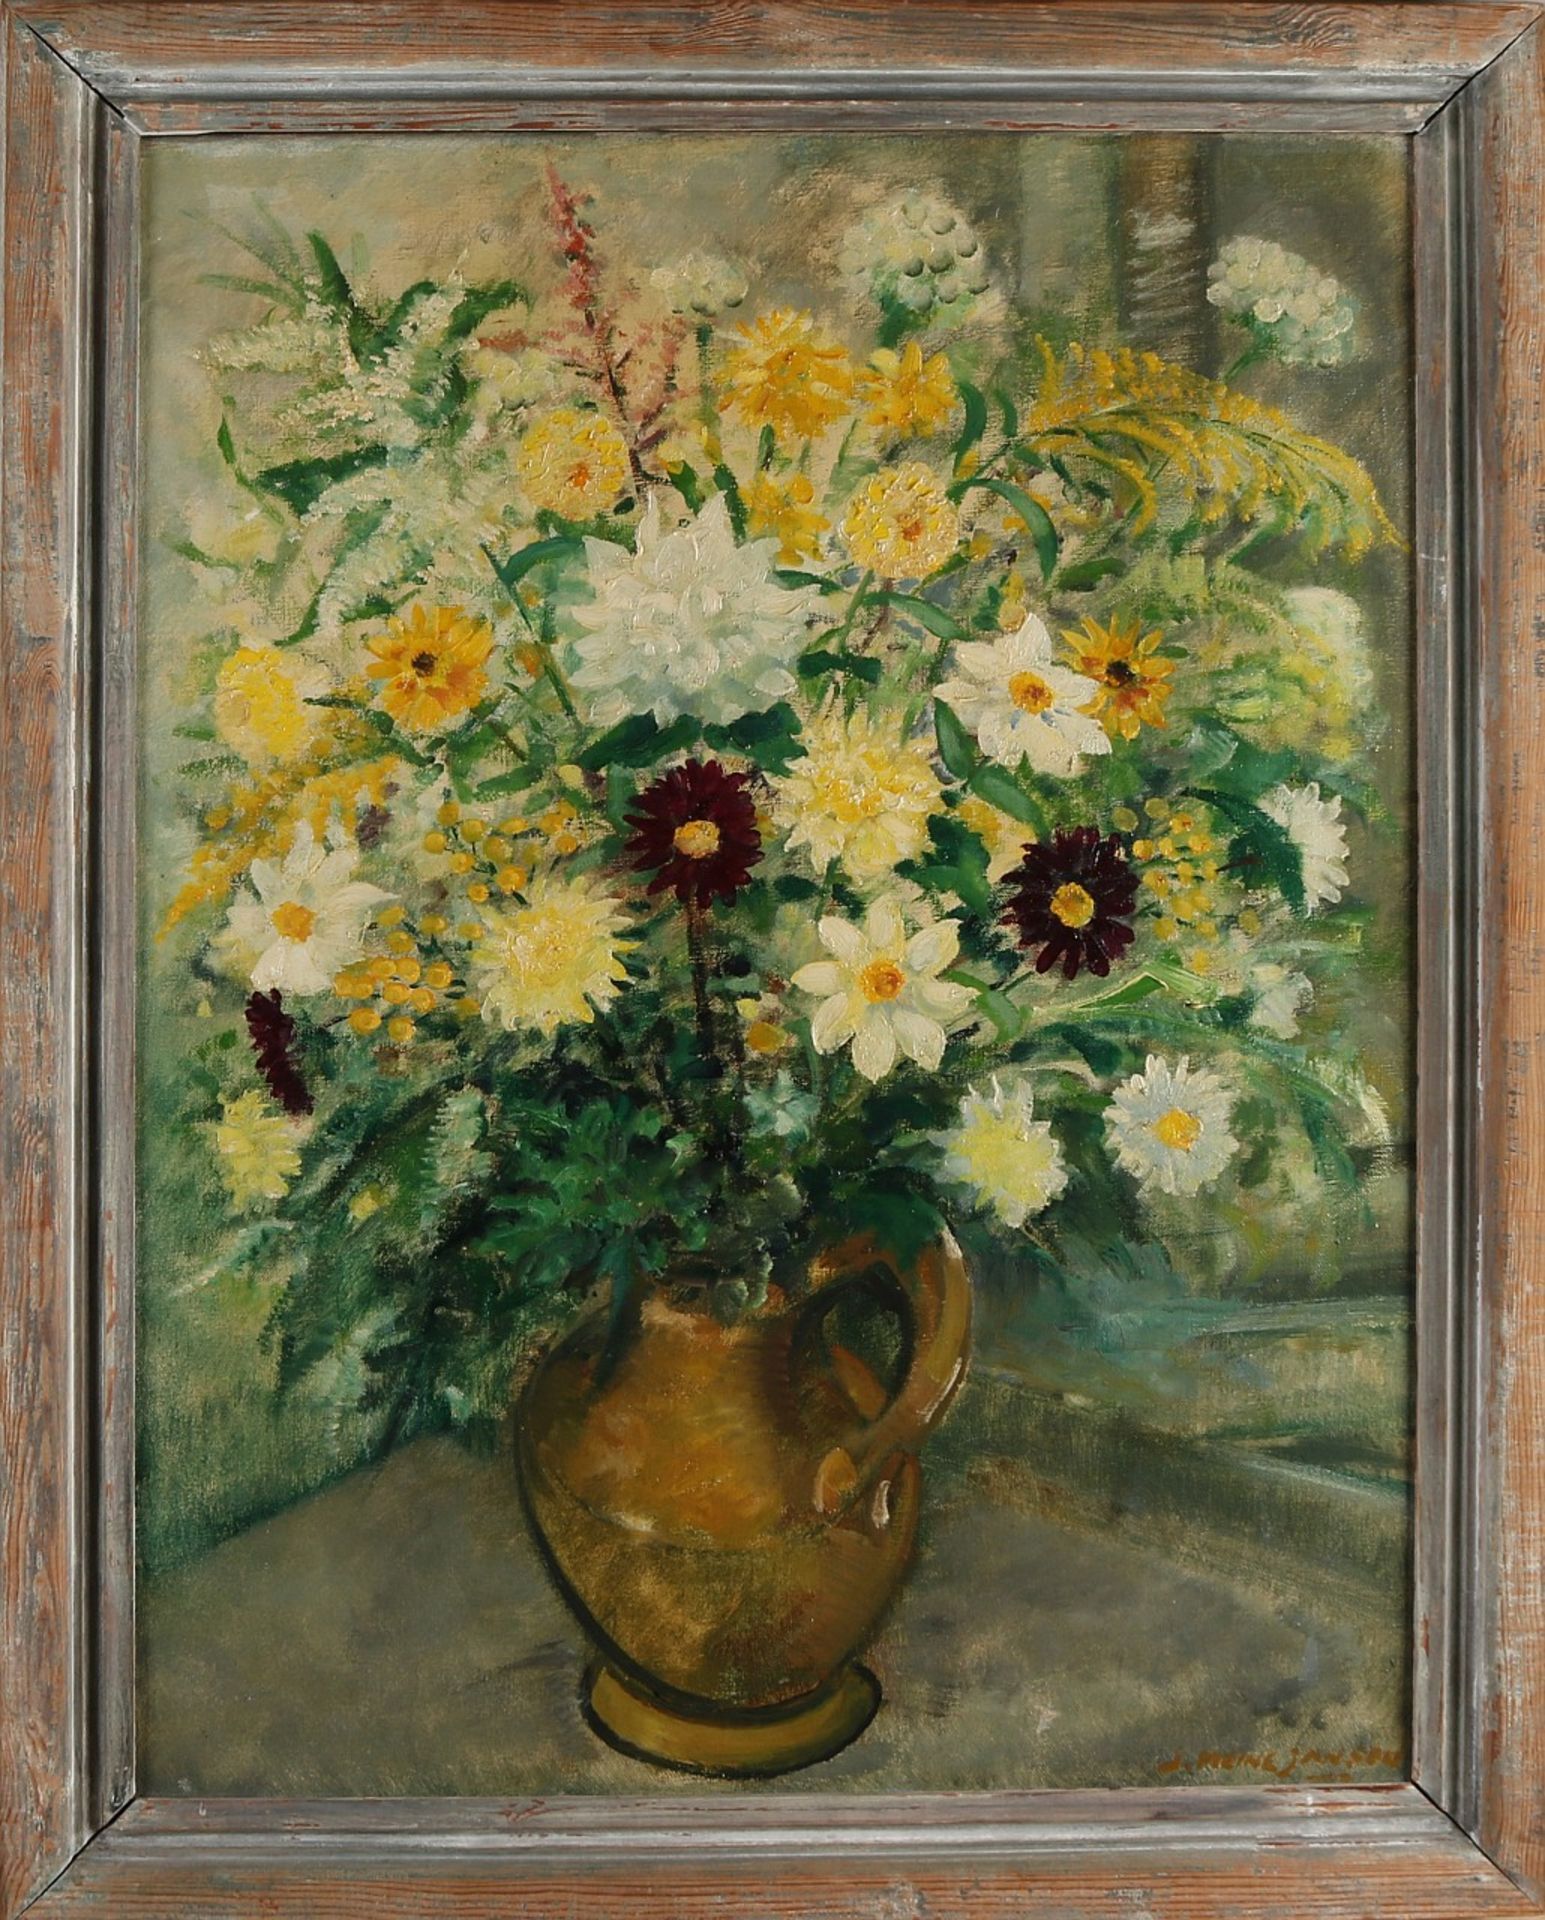 J. Meine Jansen, Vase with flowers